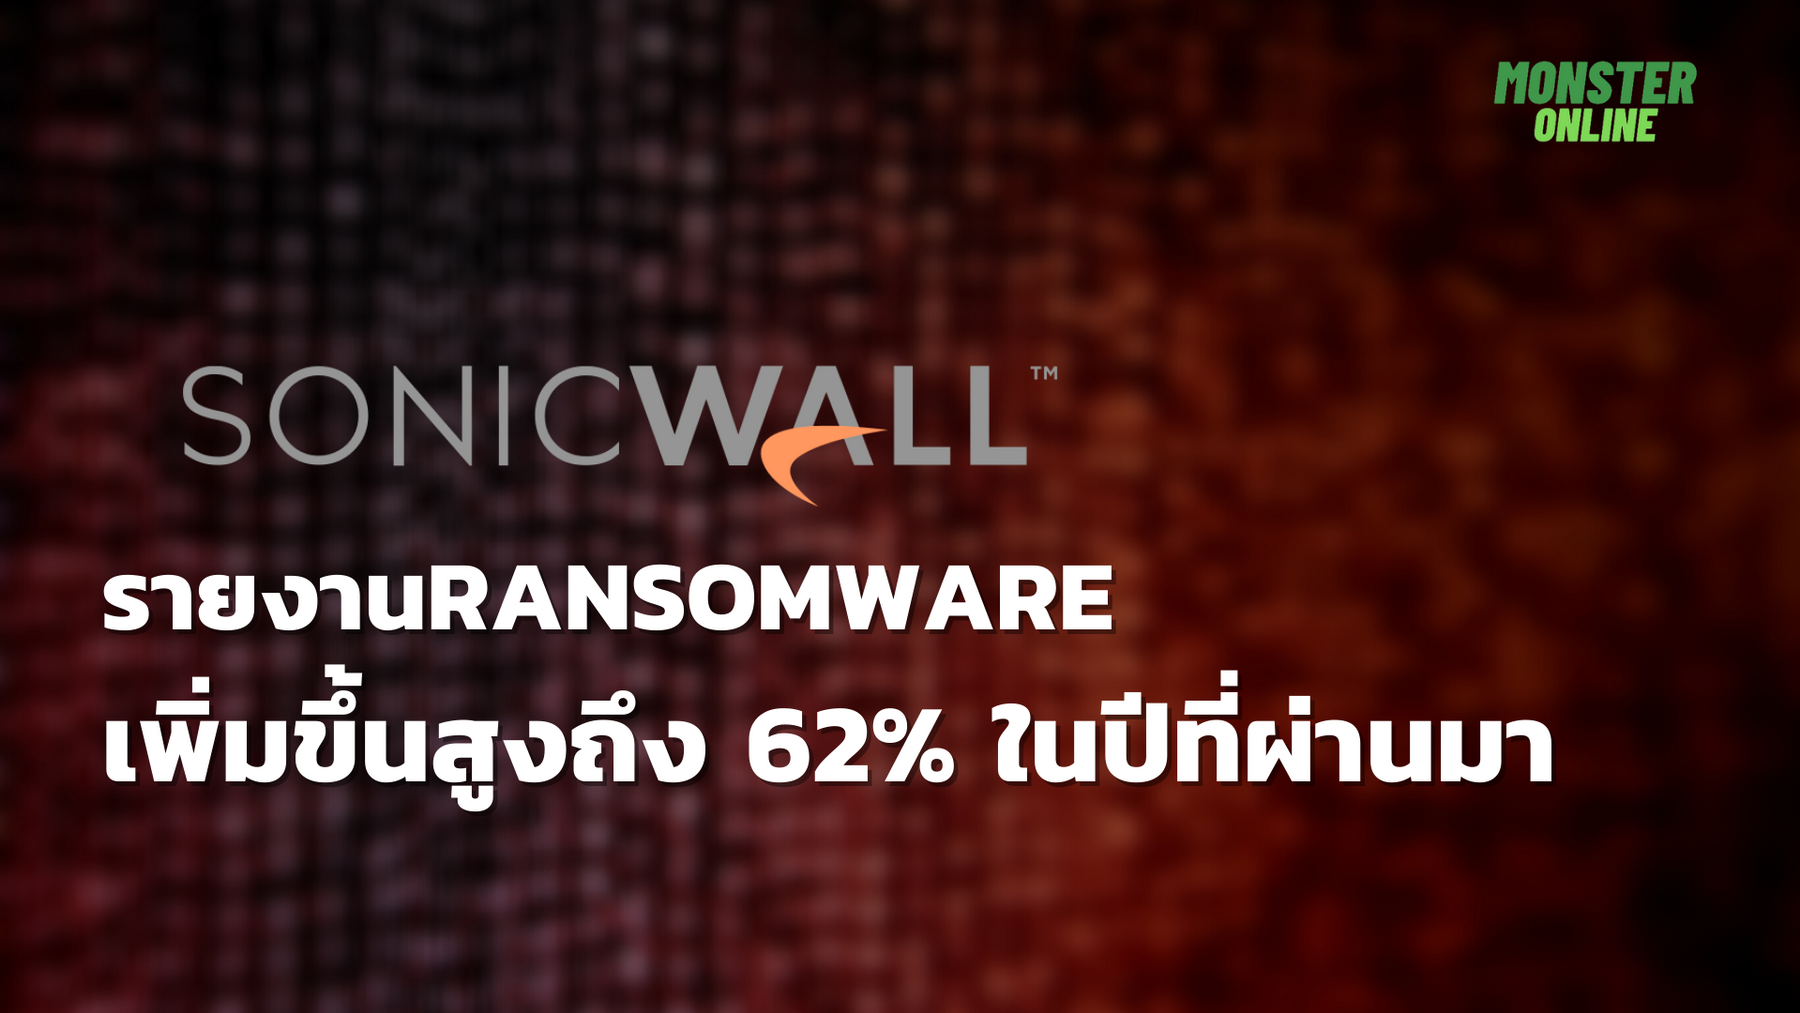 SONICWALL รายงาน RANSOMWARE เพิ่มขึ้นสูงถึง 62% ในปีที่ผ่านมา